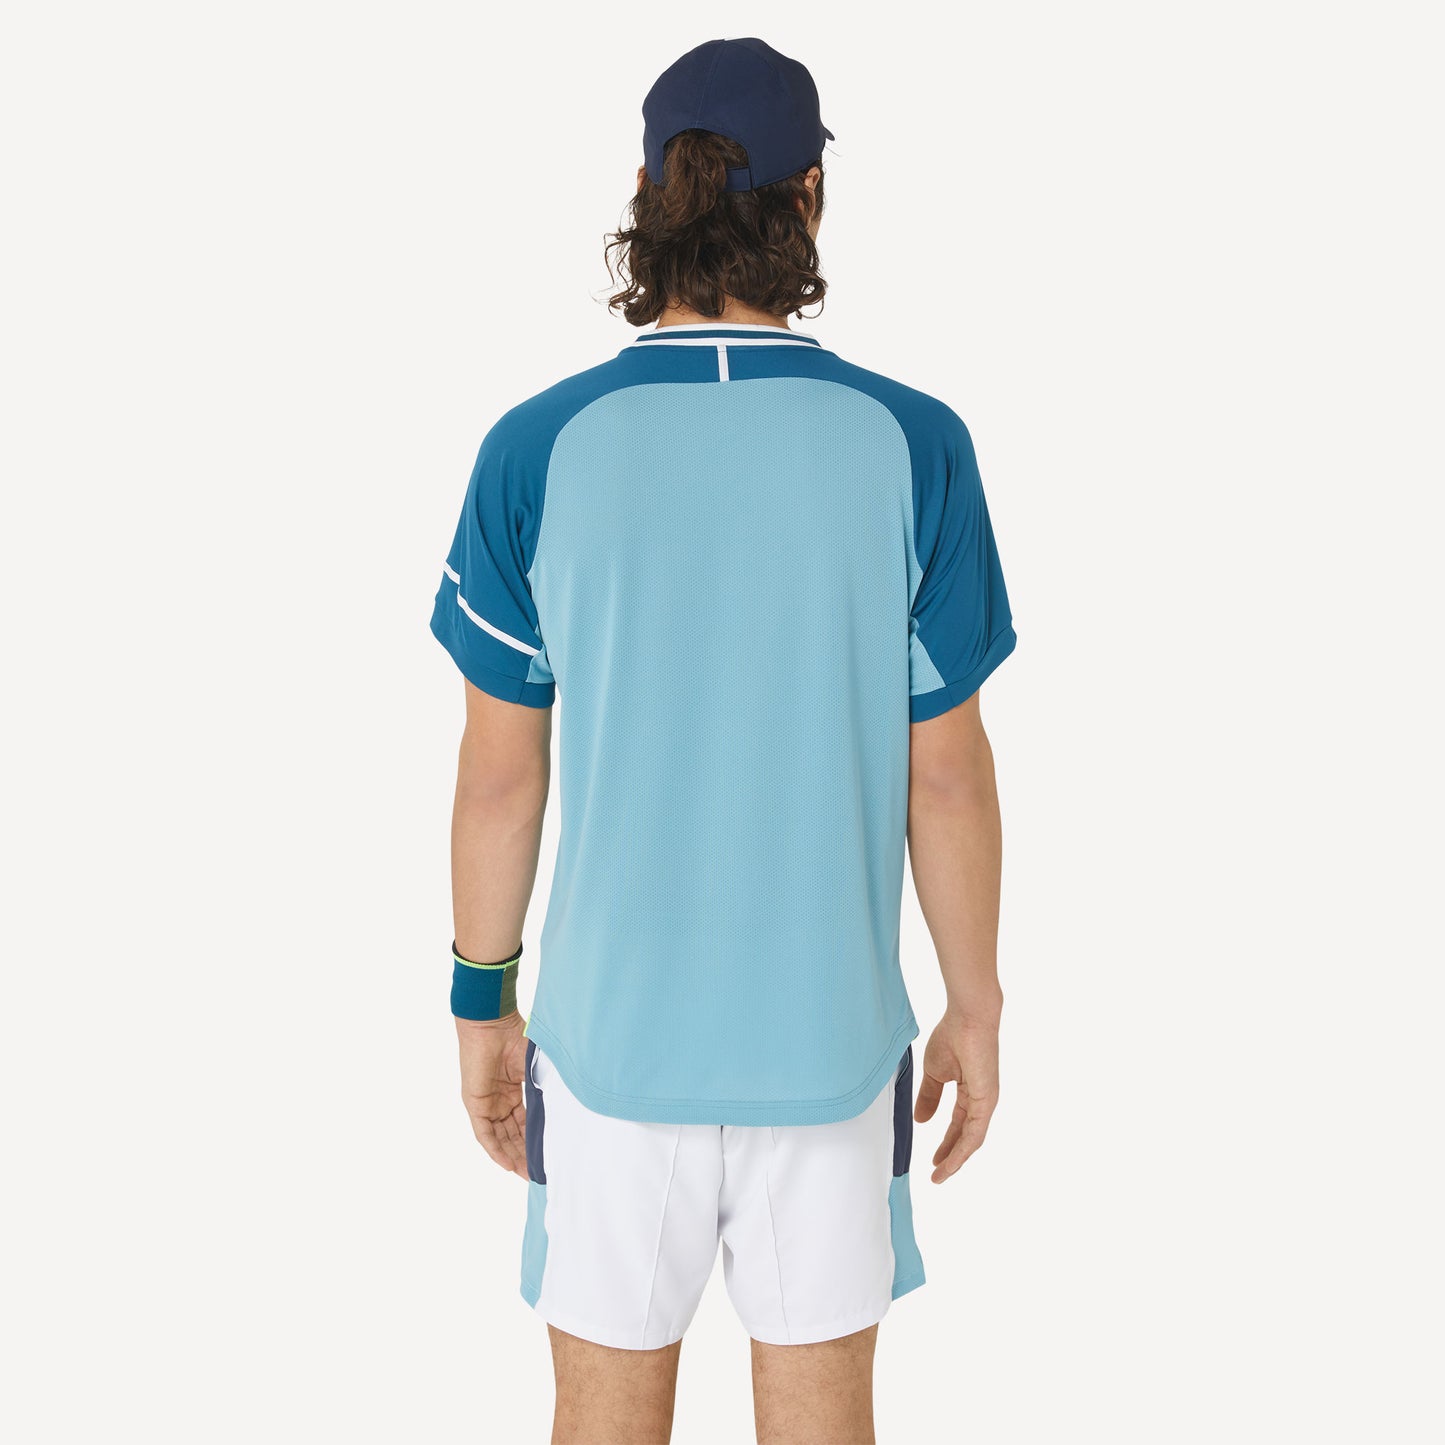 ASICS Match Men's Tennis Shirt Blue (2)